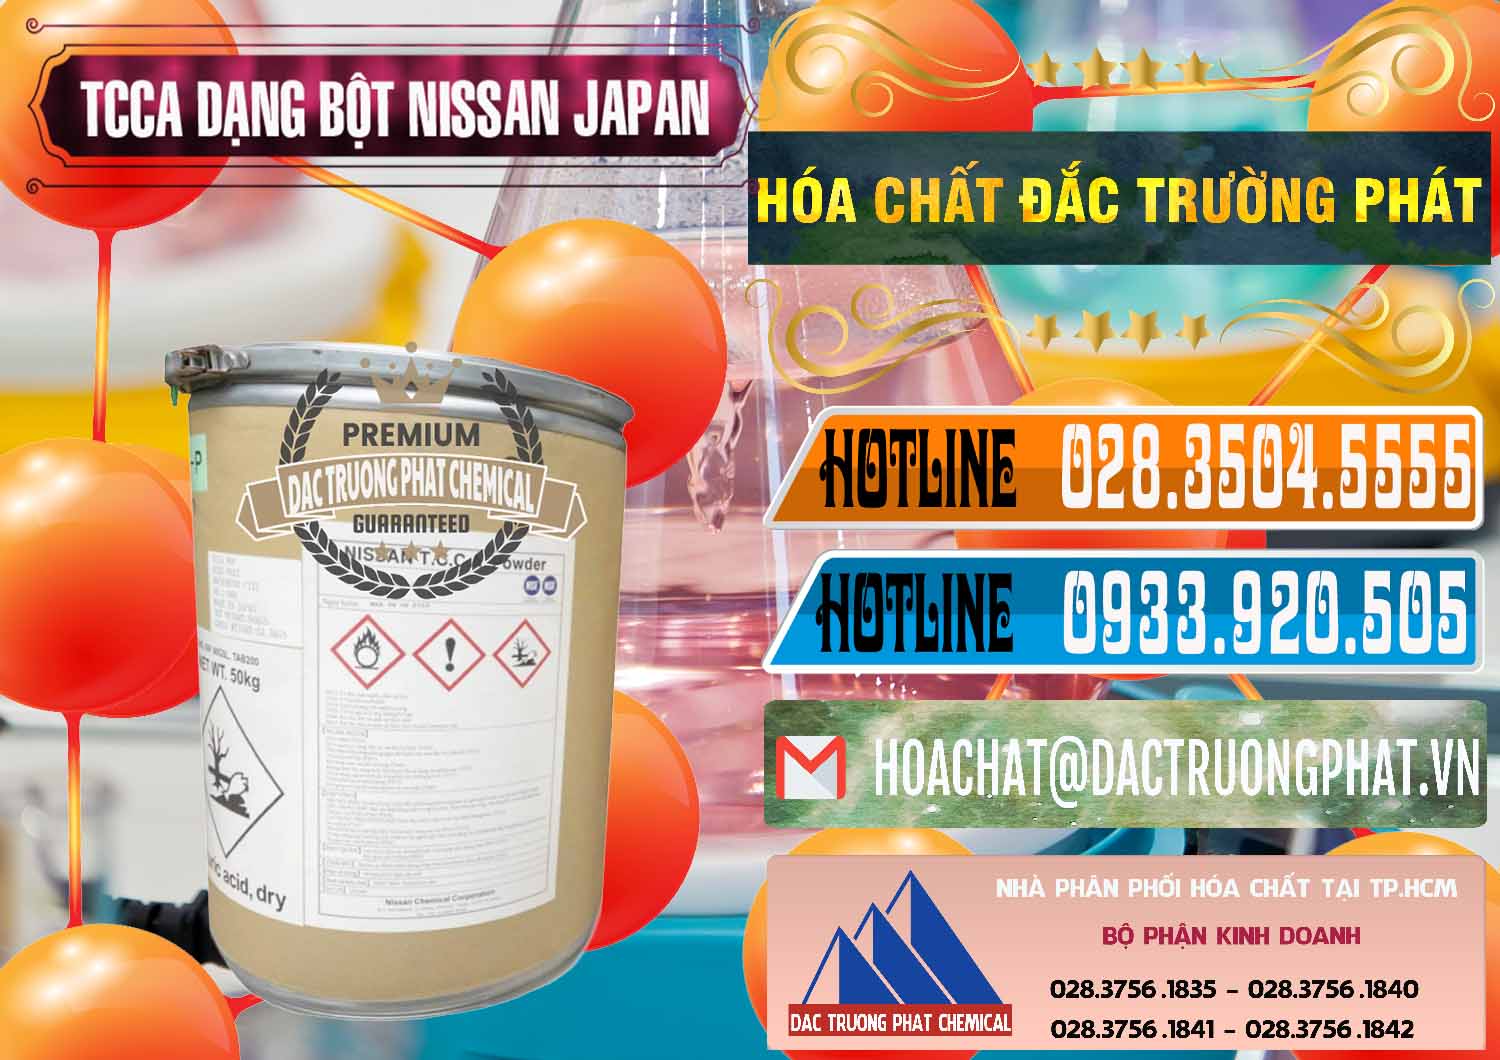 Công ty chuyên kinh doanh ( bán ) TCCA - Acid Trichloroisocyanuric 90% Dạng Bột Nissan Nhật Bản Japan - 0375 - Công ty kinh doanh & cung cấp hóa chất tại TP.HCM - stmp.net